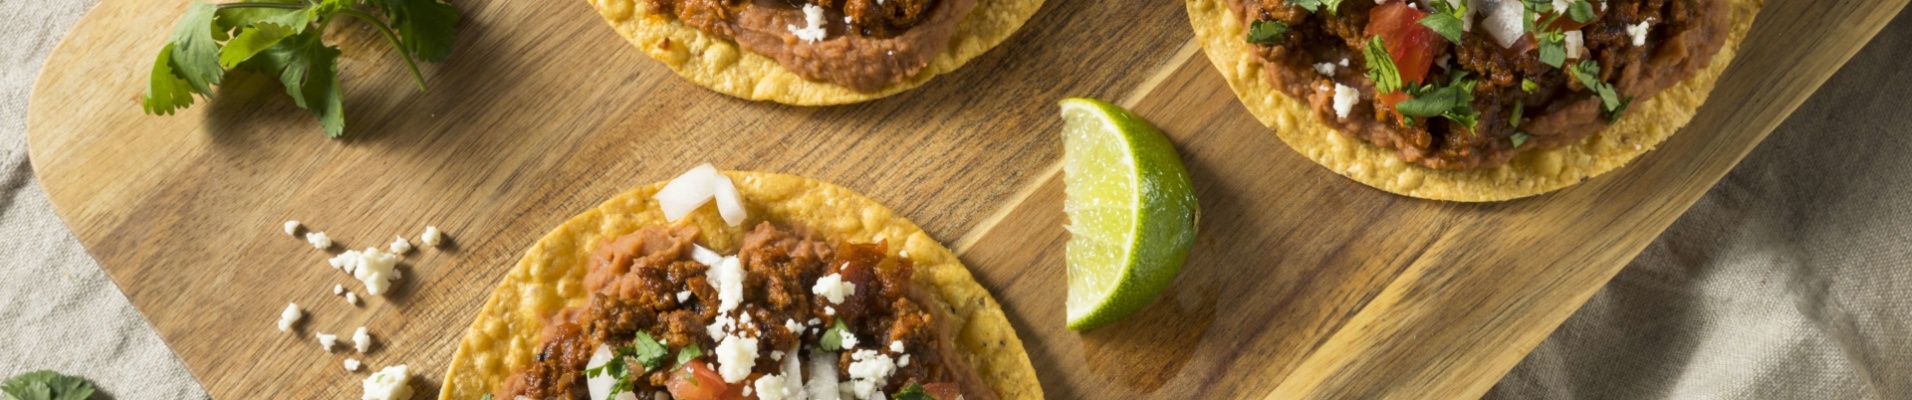 tostadas-cuisine-mexique